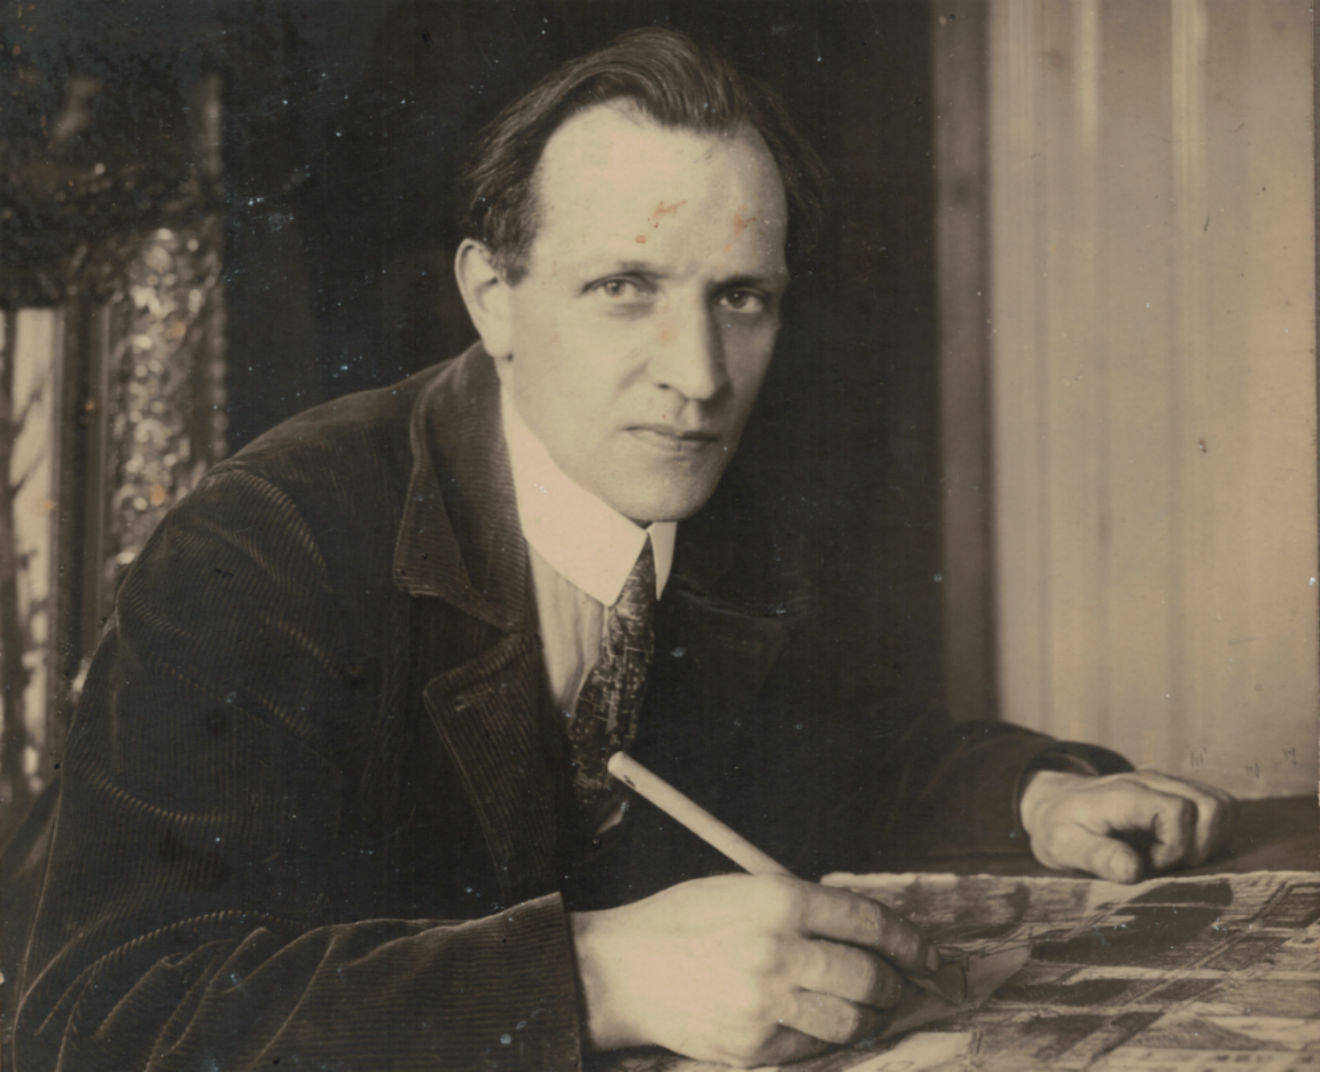 Jan Sirks in Studio c 1925